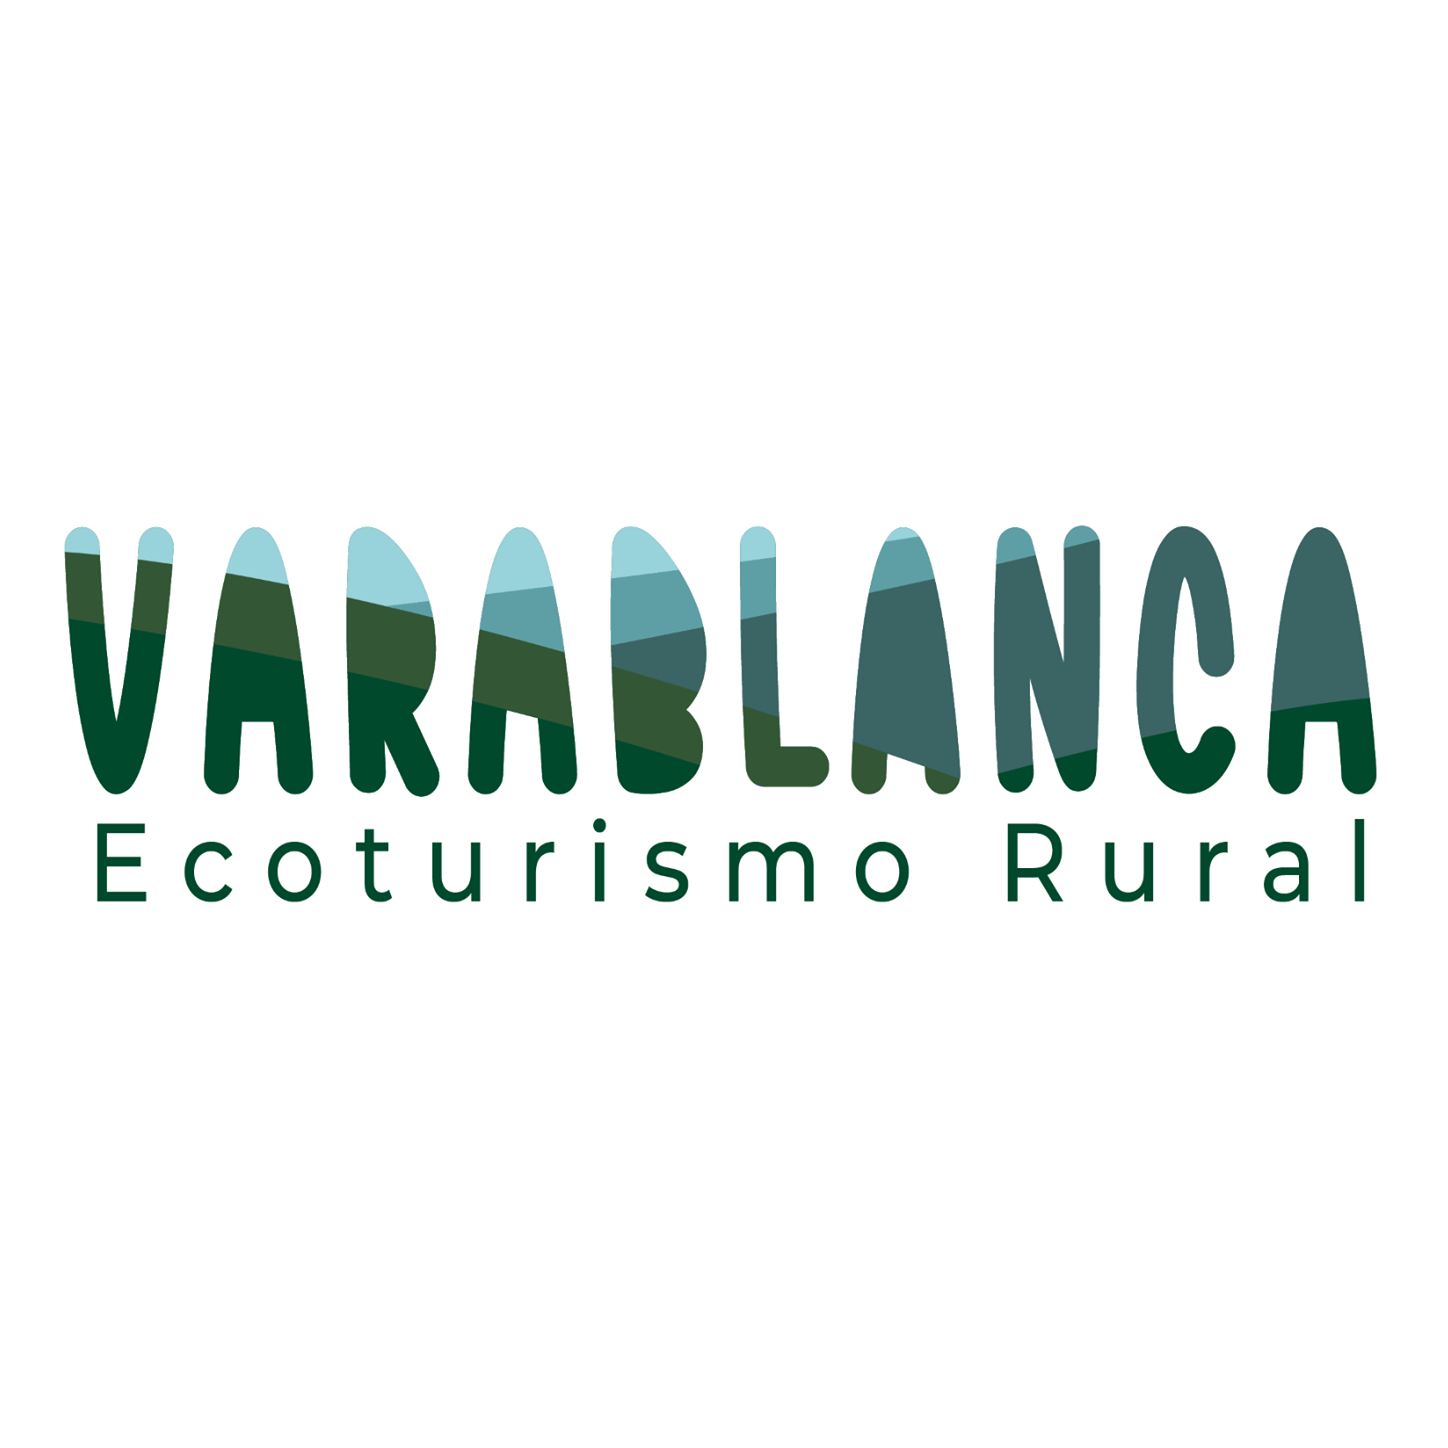 VARABLANCA ECOTURISMO RURAL, R.L.